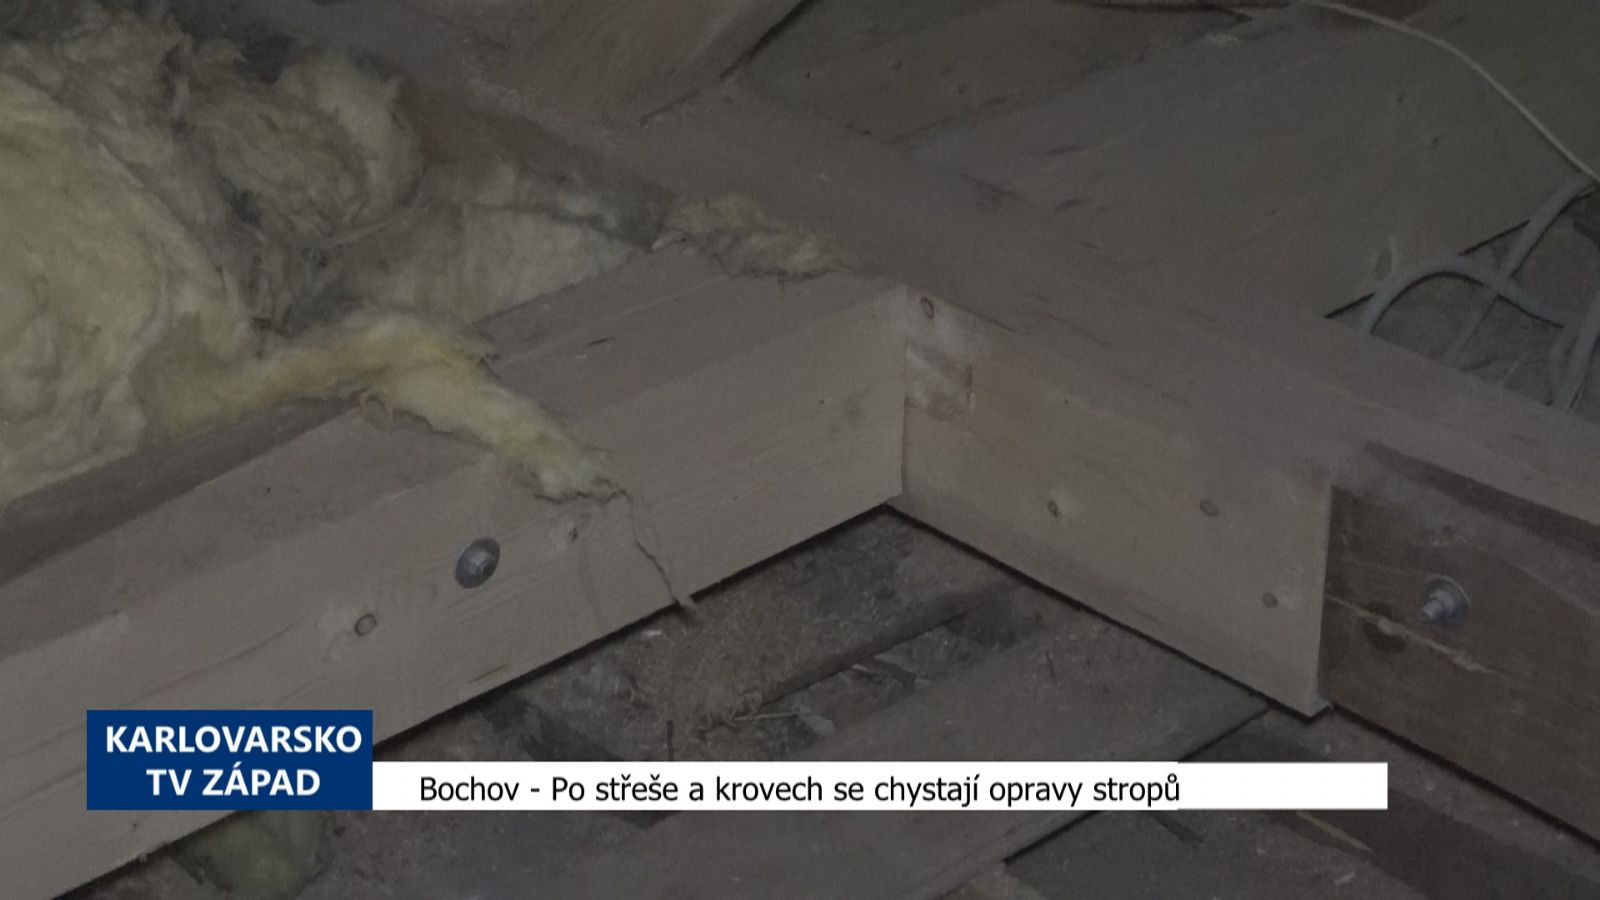 Bochov: Po střeše a krovech se chystají opravy stropů (TV Západ)